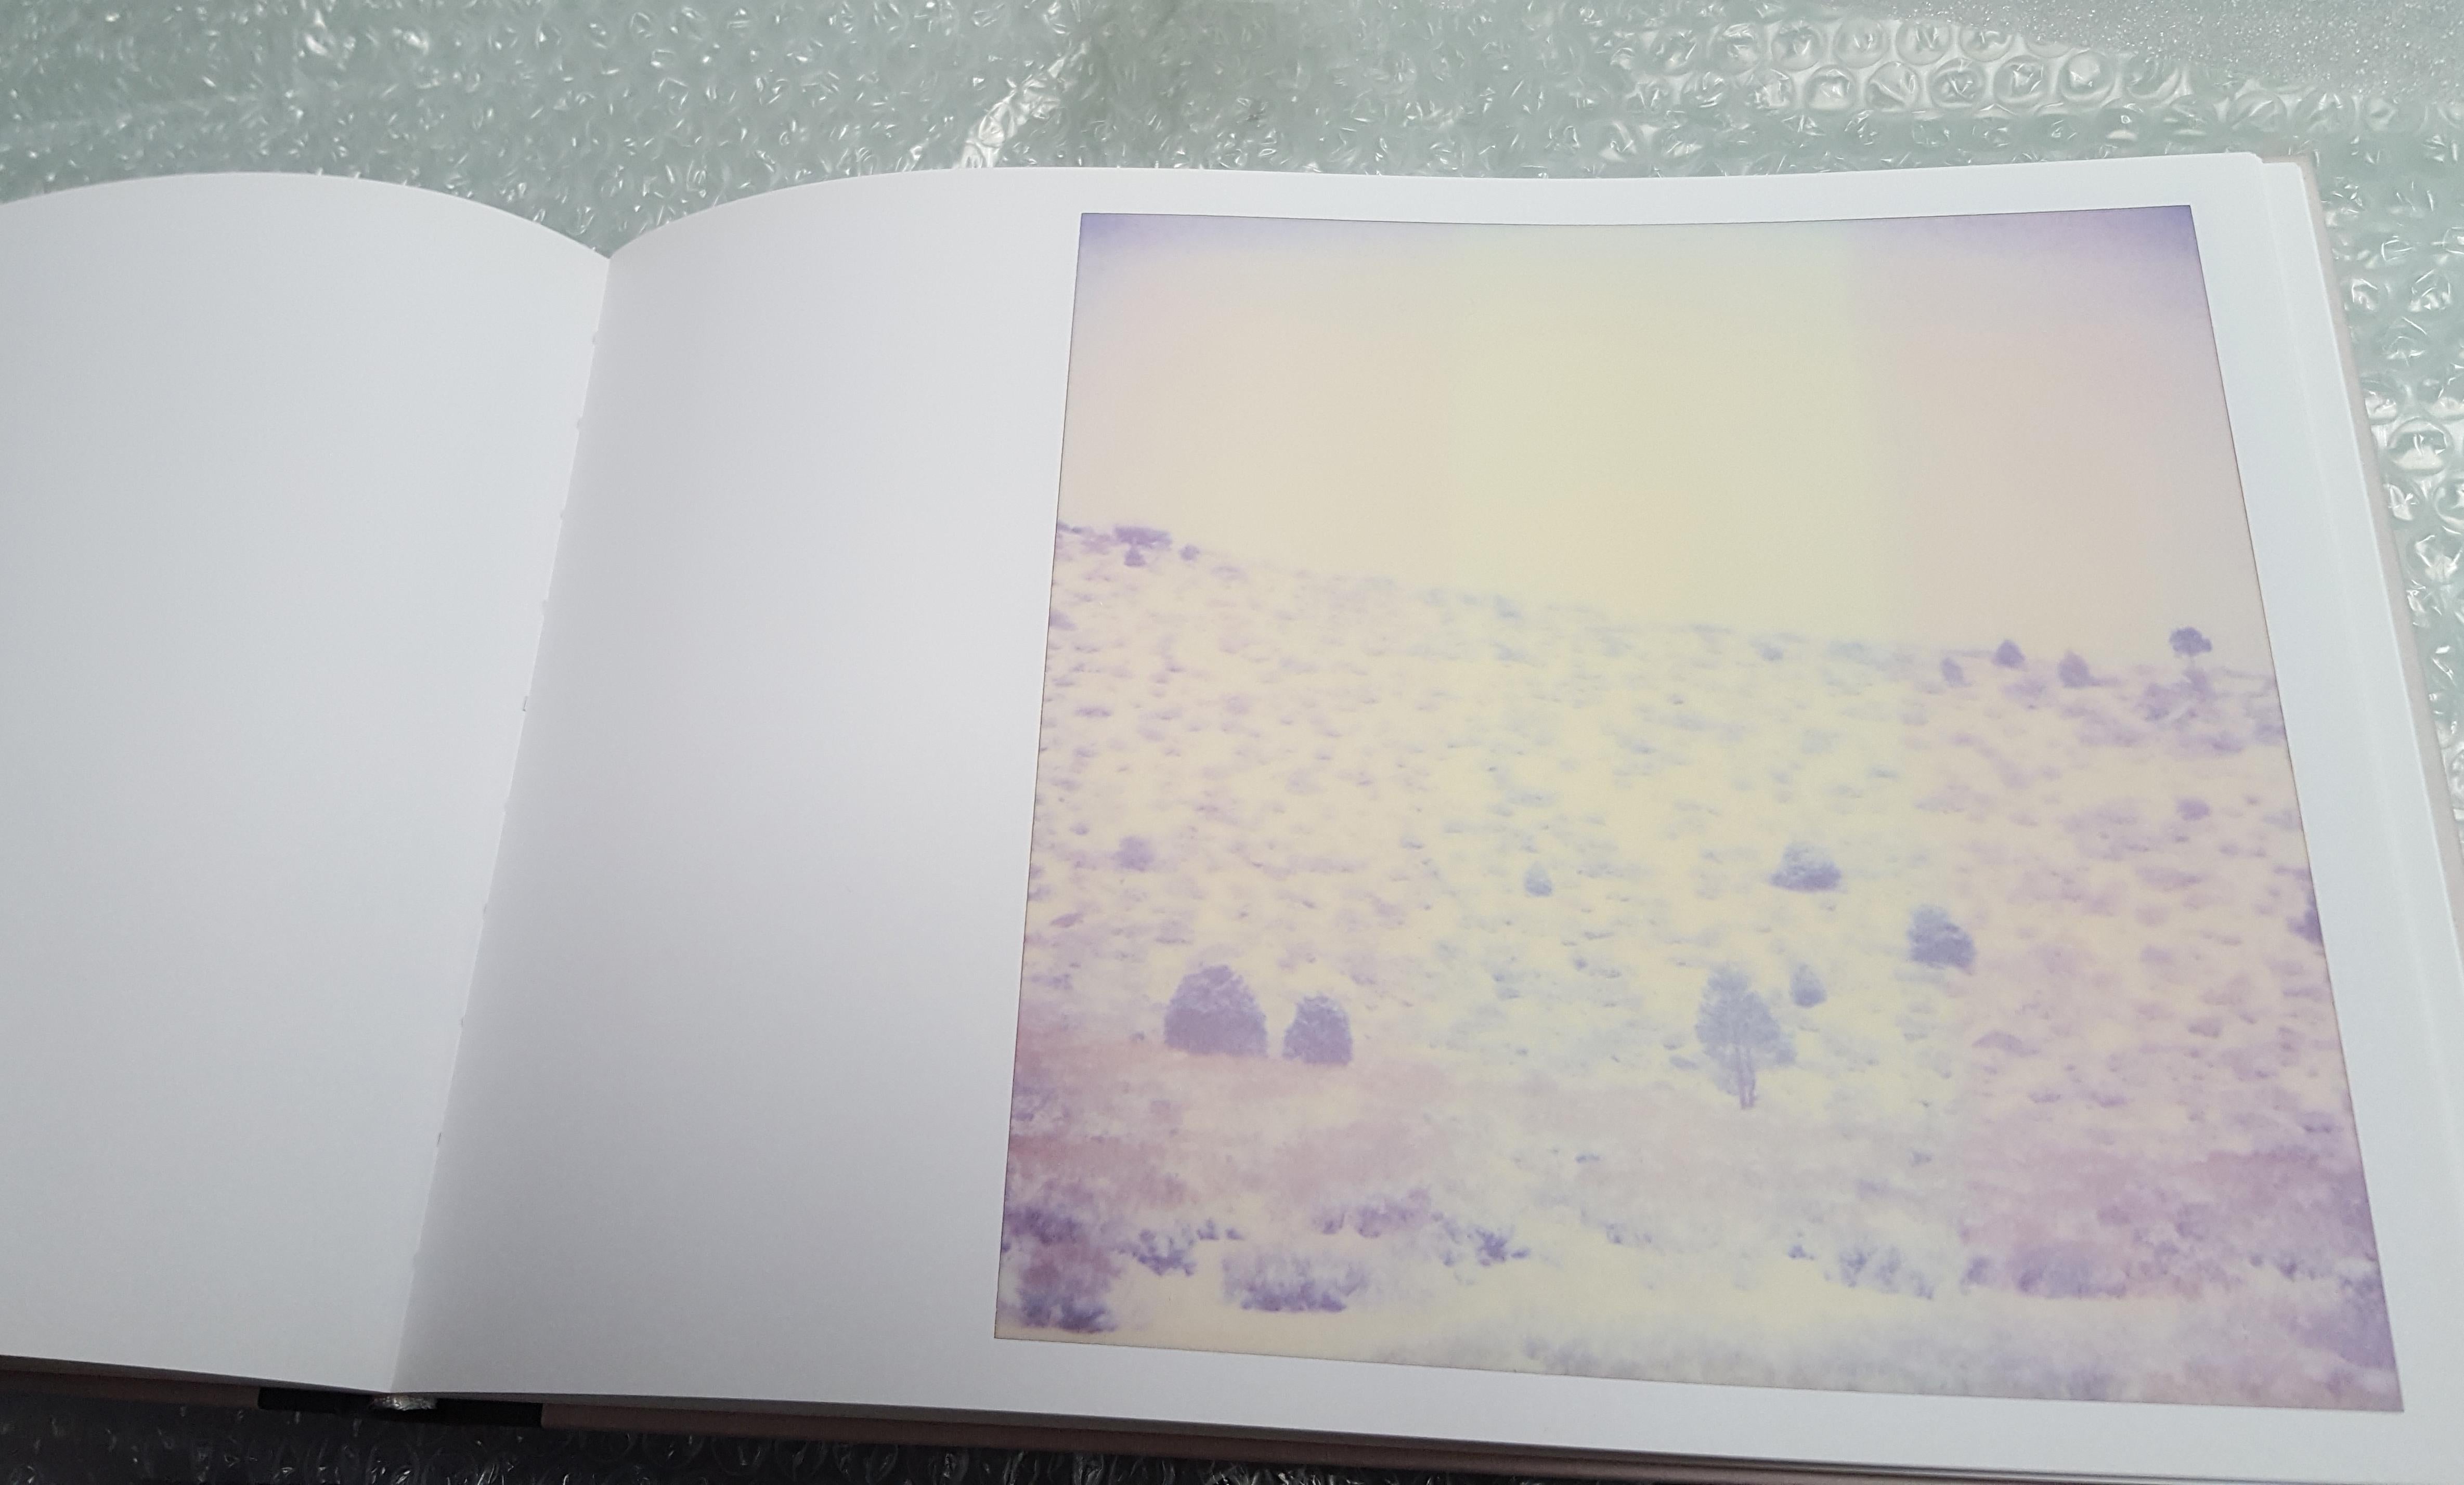 Purple Valley (Wastelands) - Contemporary, Landscape, Polaroid, Analog, mounted - Photograph by Stefanie Schneider